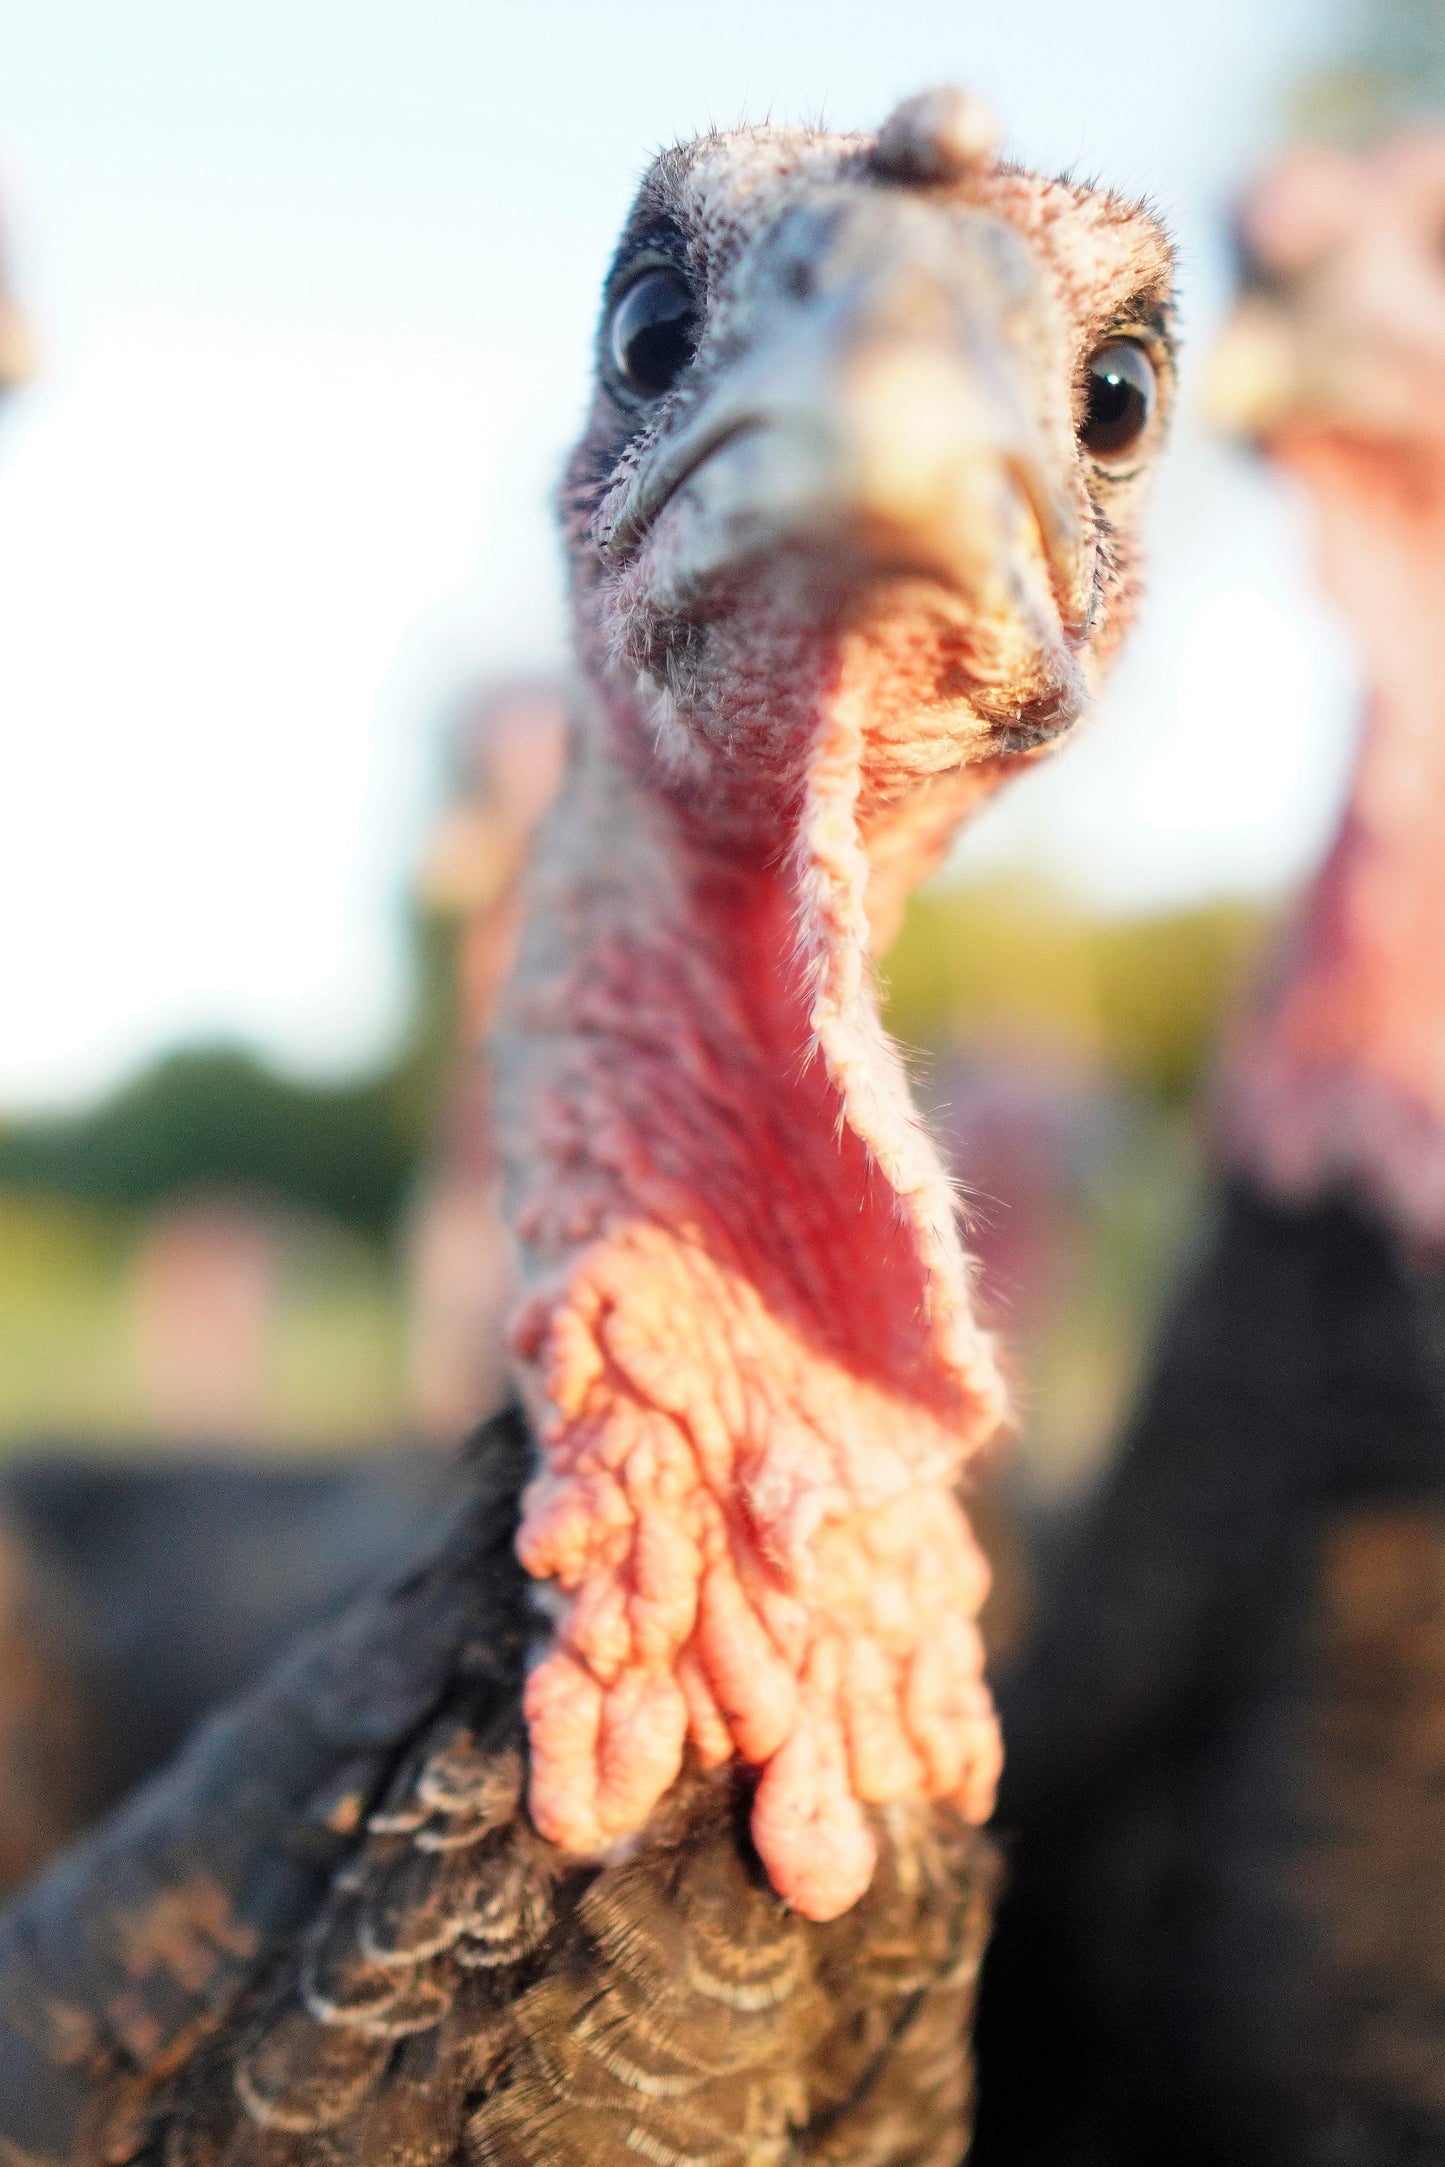 Deposit for a Bronze Thanksgiving Turkey - Pastured & Regenerative